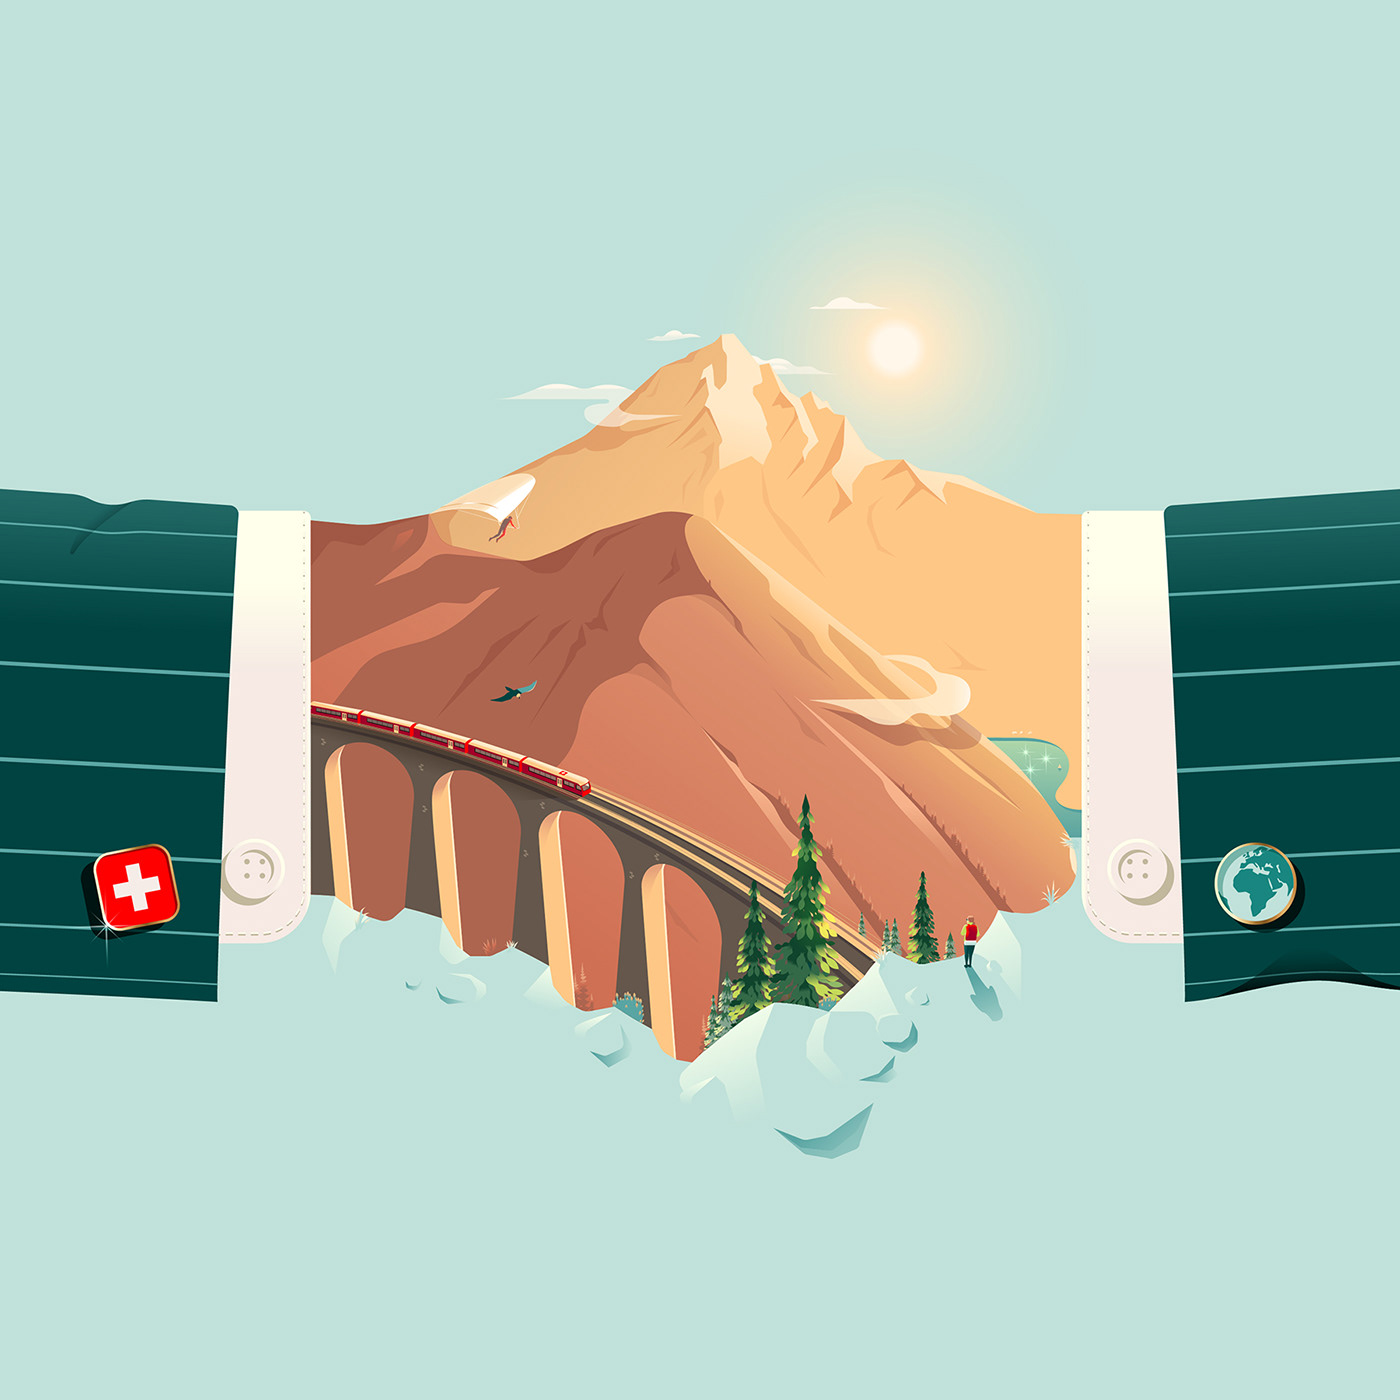 alps business globalisation handshake hanglider Landscape landwasser viaduct mountains swiss Switzerland